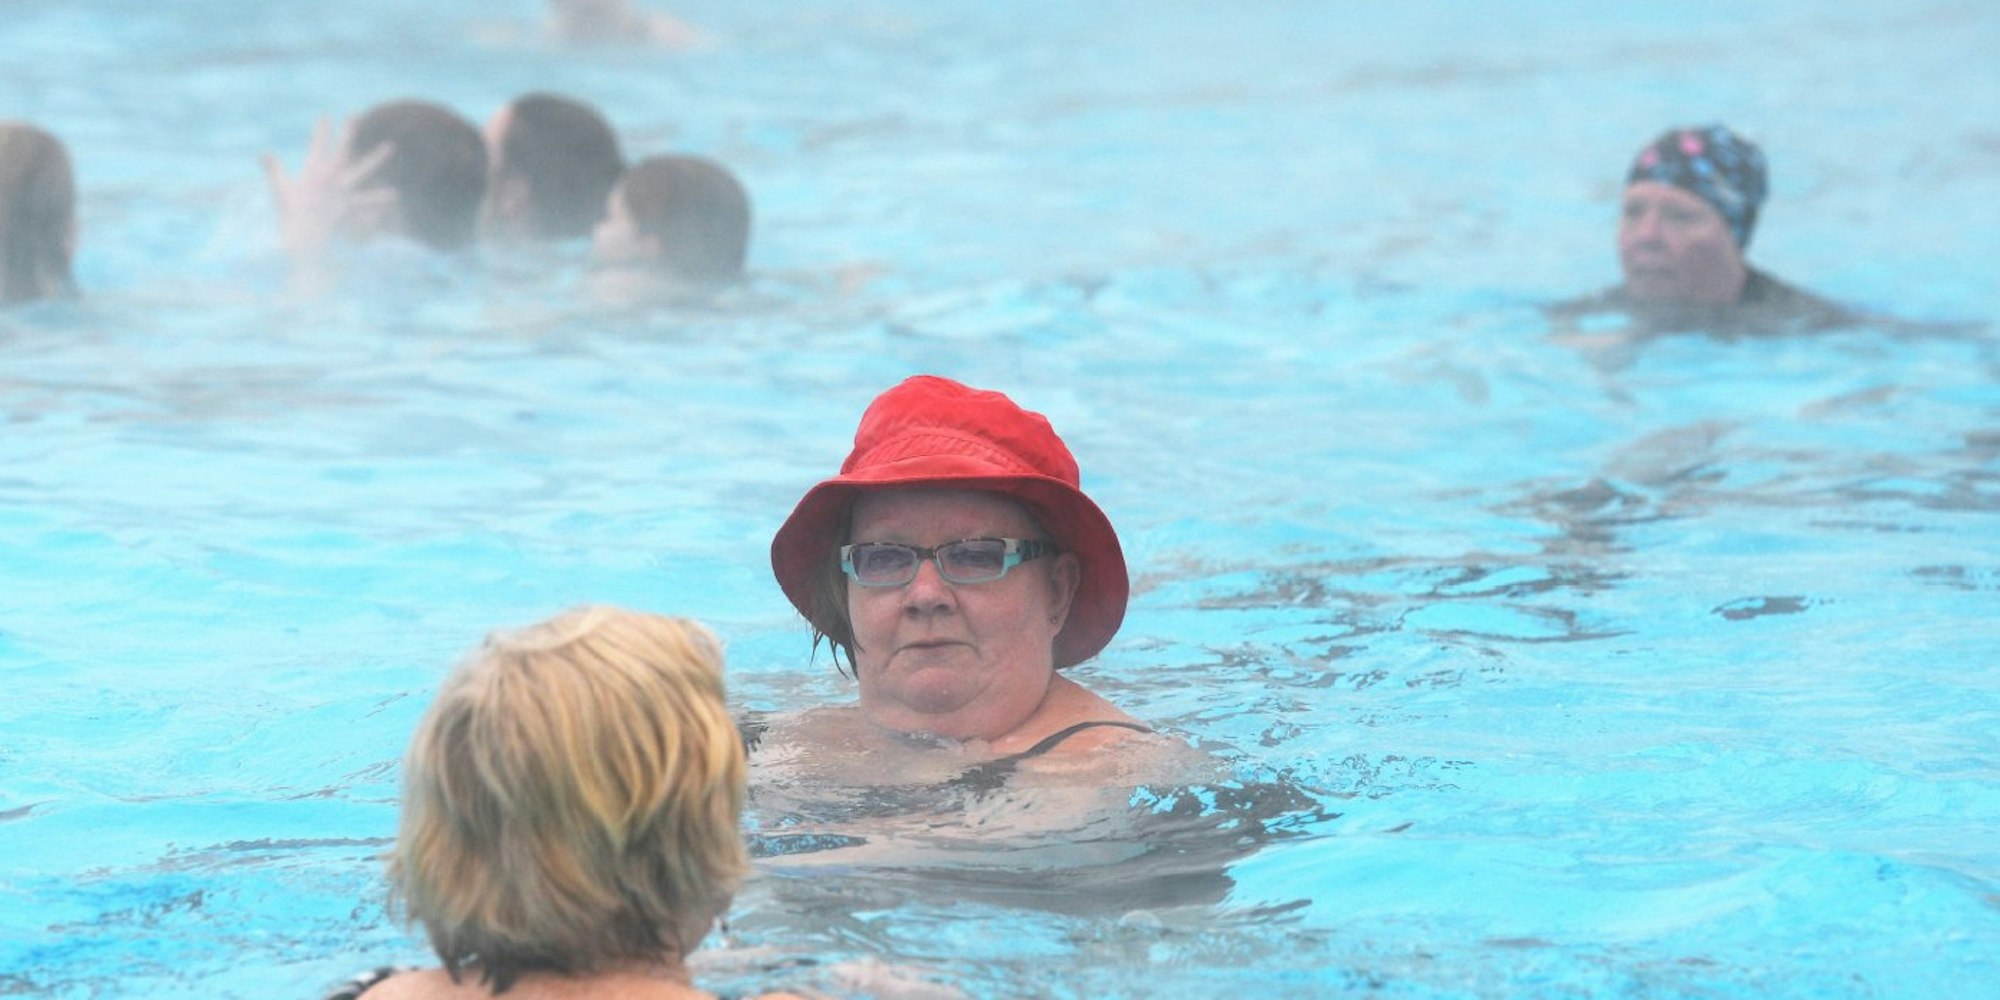 Schwimmen und andere Ausdauersportarten werden im Alter empfohlen.